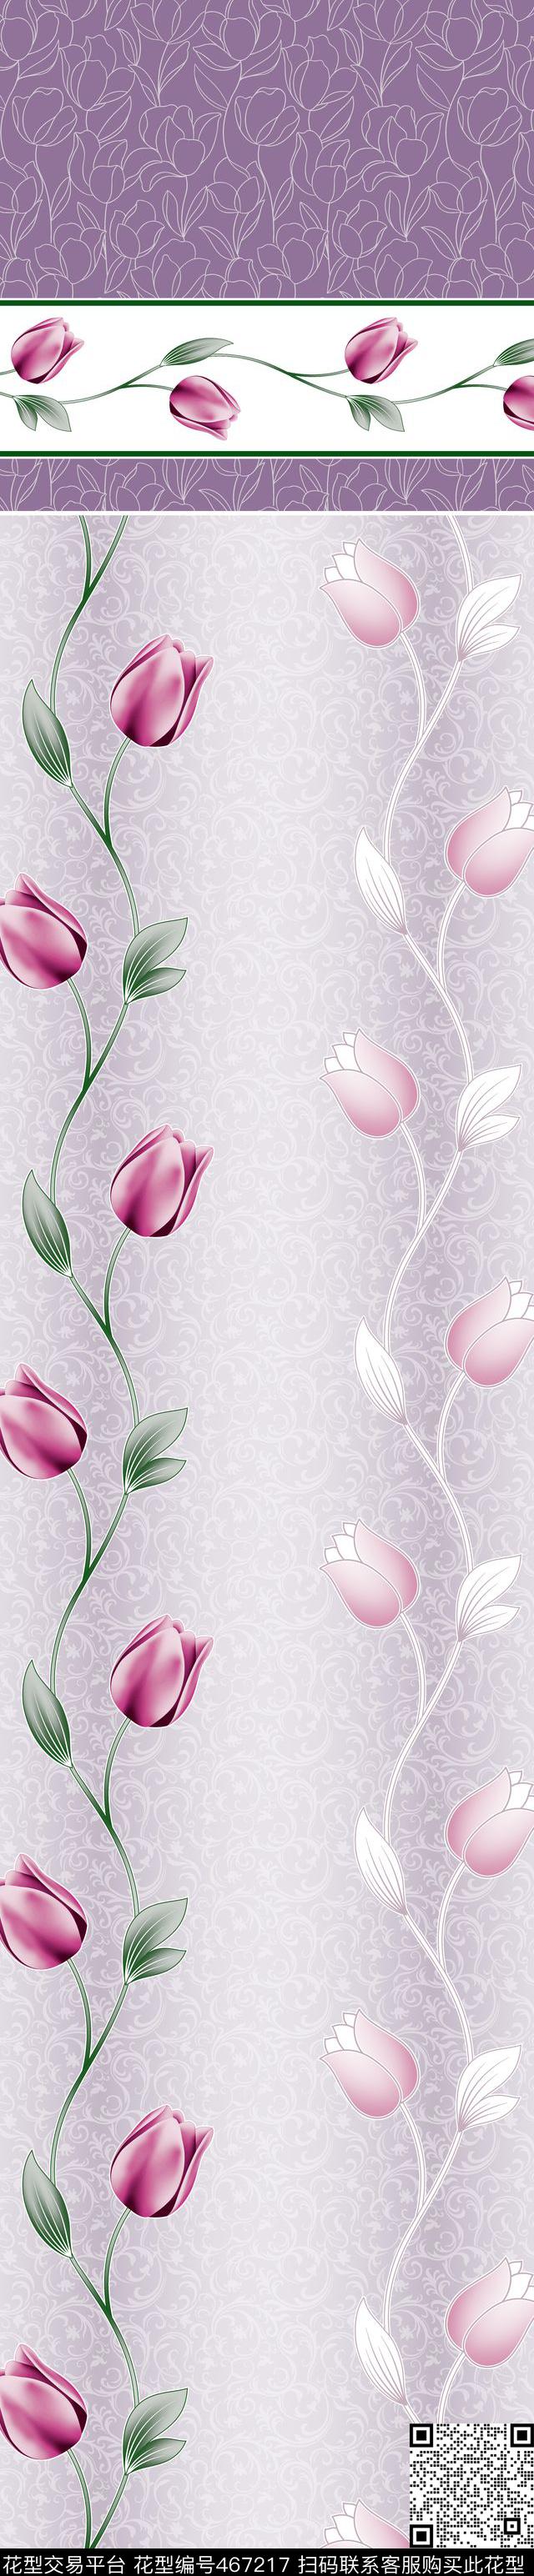 时尚窗帘花型 家纺花型 流行窗帘花型 - 467217 - 时尚窗帘花型 家纺花型 流行窗帘花型 - 传统印花花型 － 窗帘花型设计 － 瓦栏